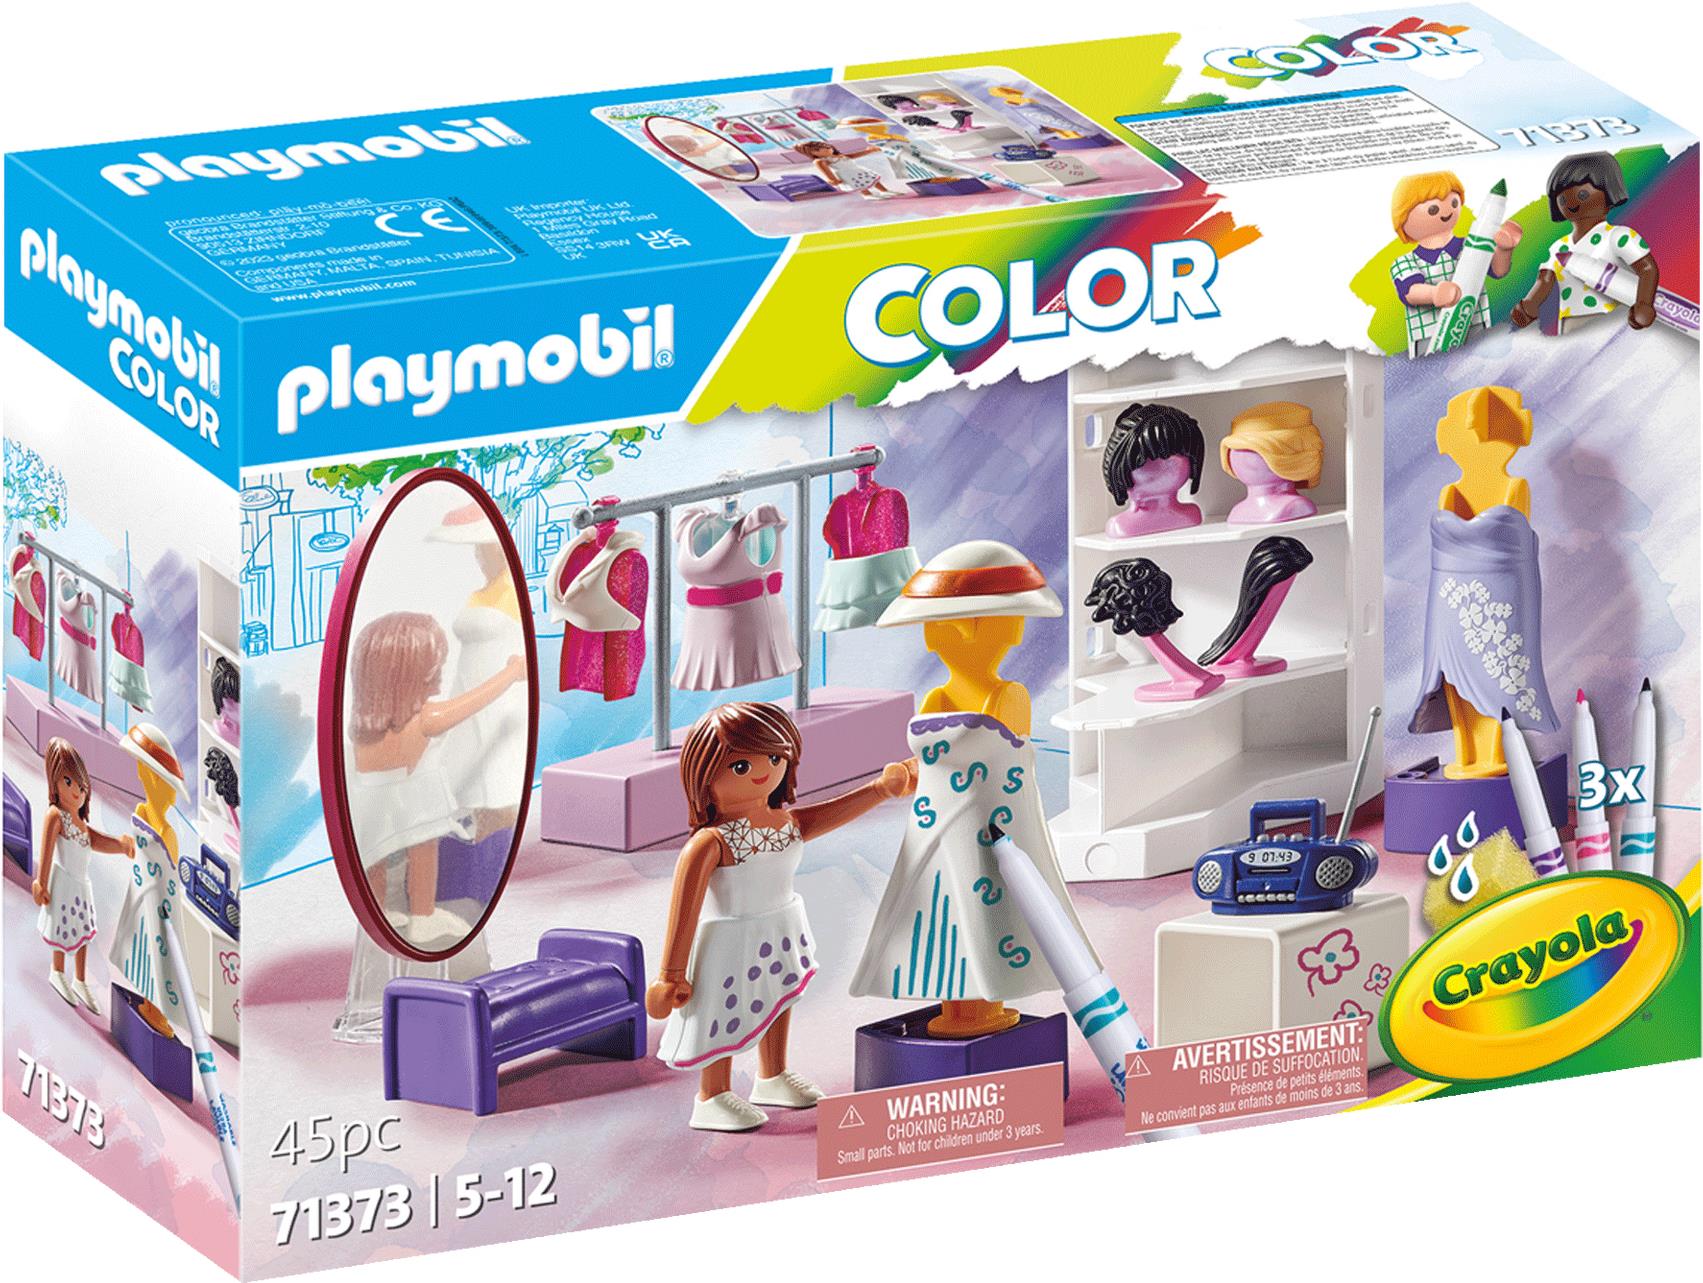 Playmobil Color: Fashion Design Set. Typ: Mode, Empfohlenes Alter in Jahren (mind.): 5 Jahr(e), Empfohlenes Alter in Jahren (max.): 12 Jahr(e), Produktfarbe: Mehrfarbig (71373)